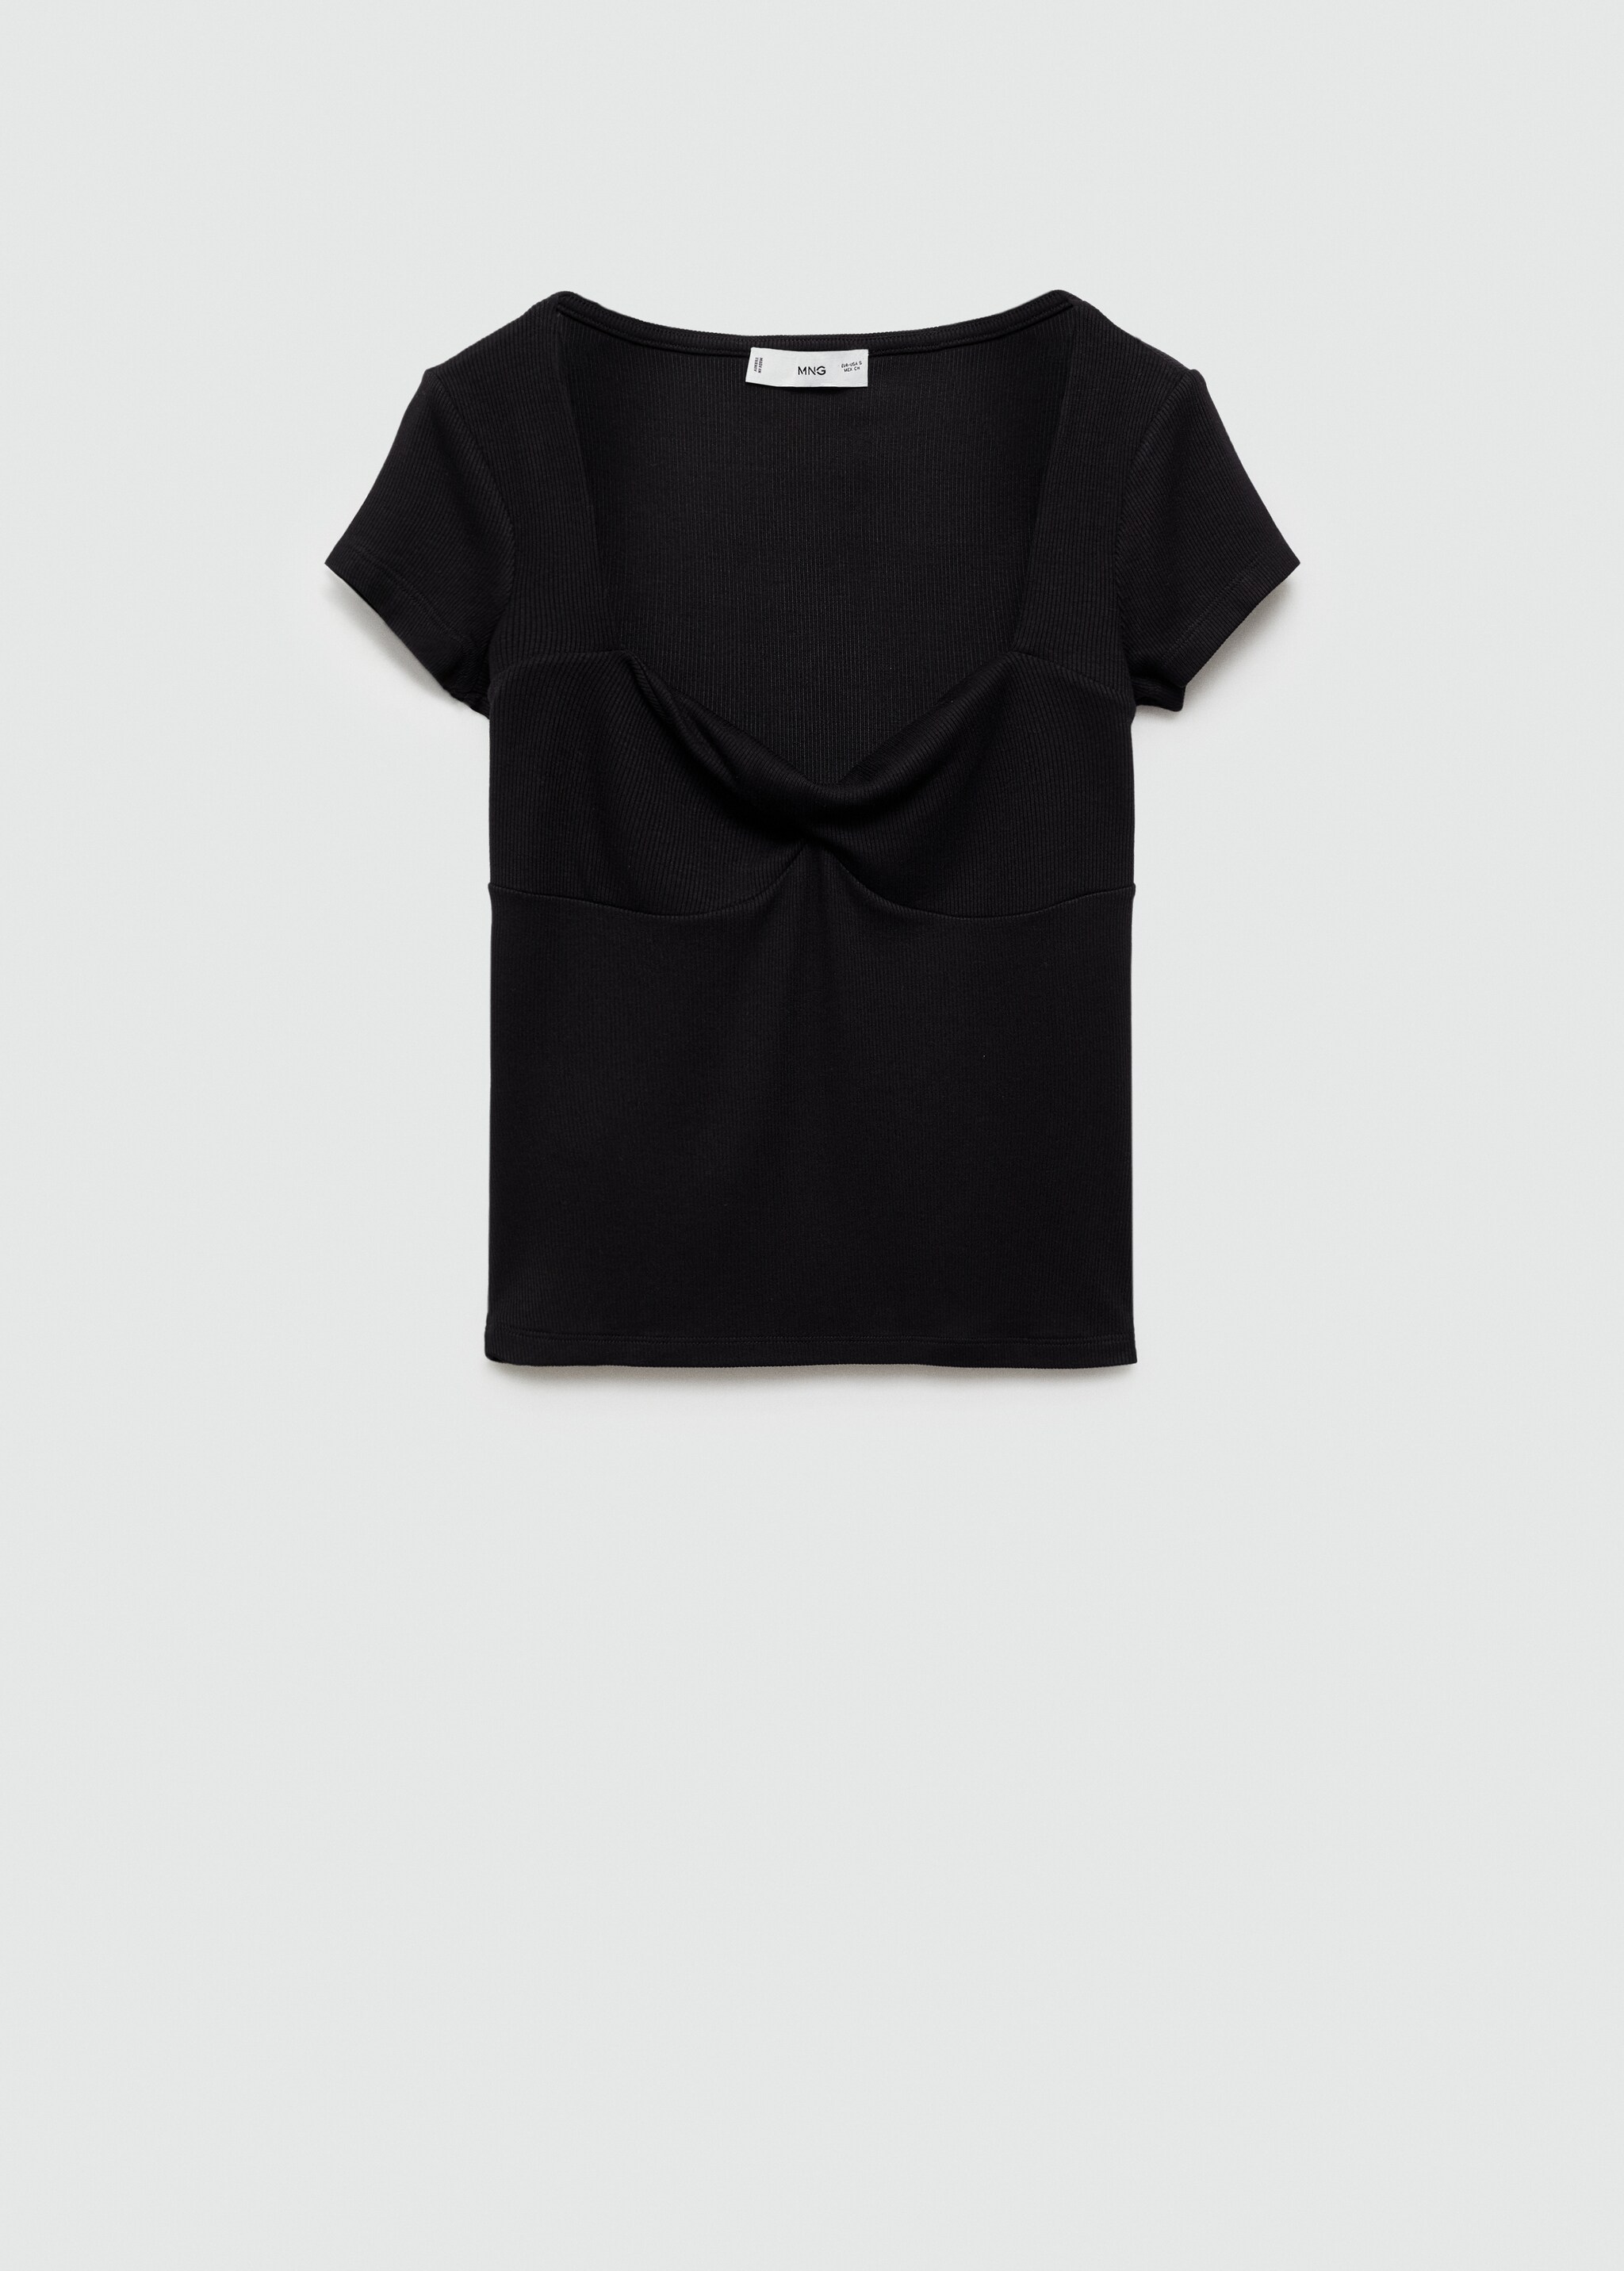 Camiseta escote drapeado - Artículo sin modelo